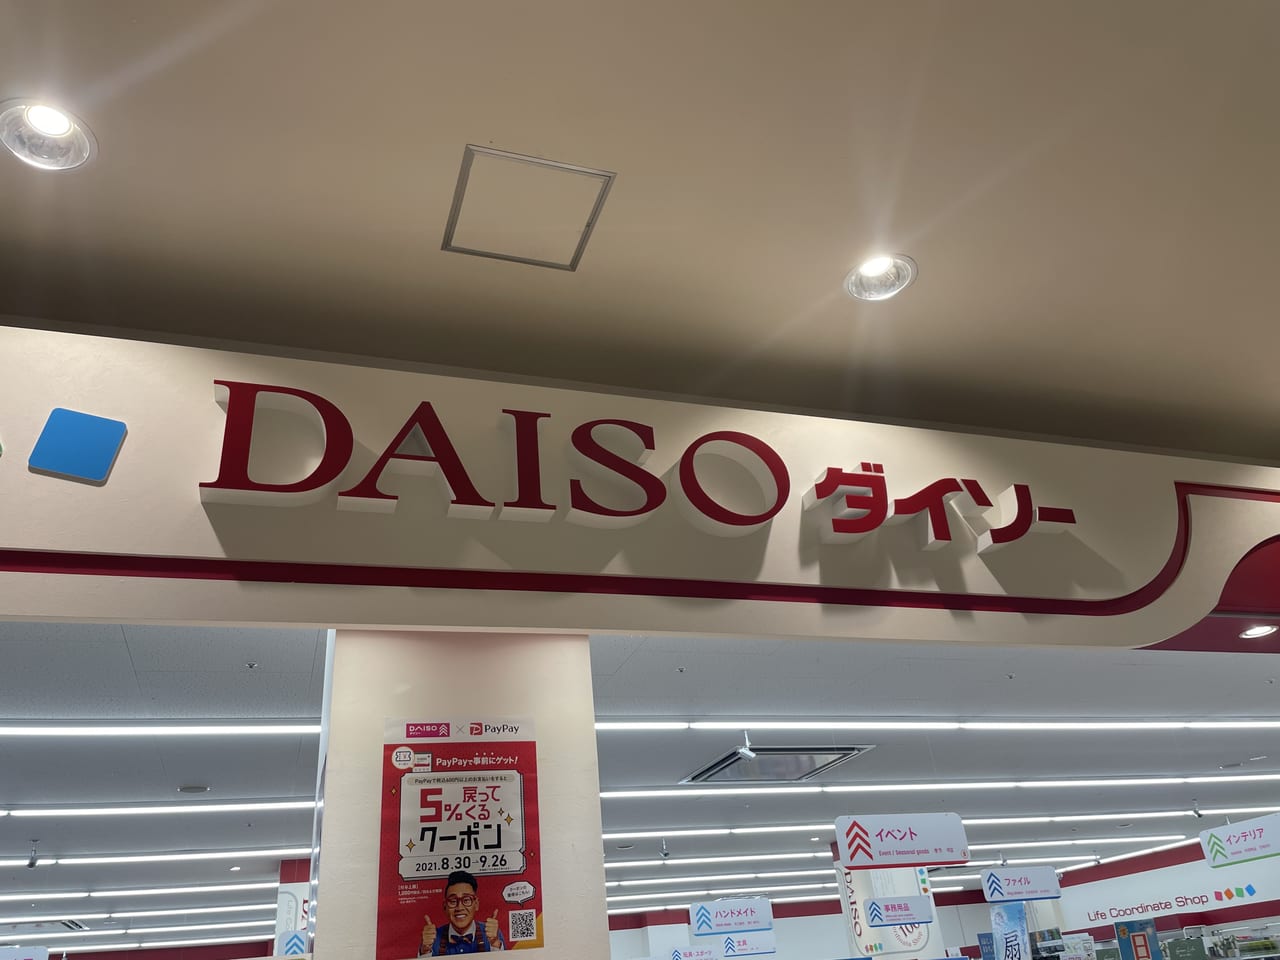 daiso